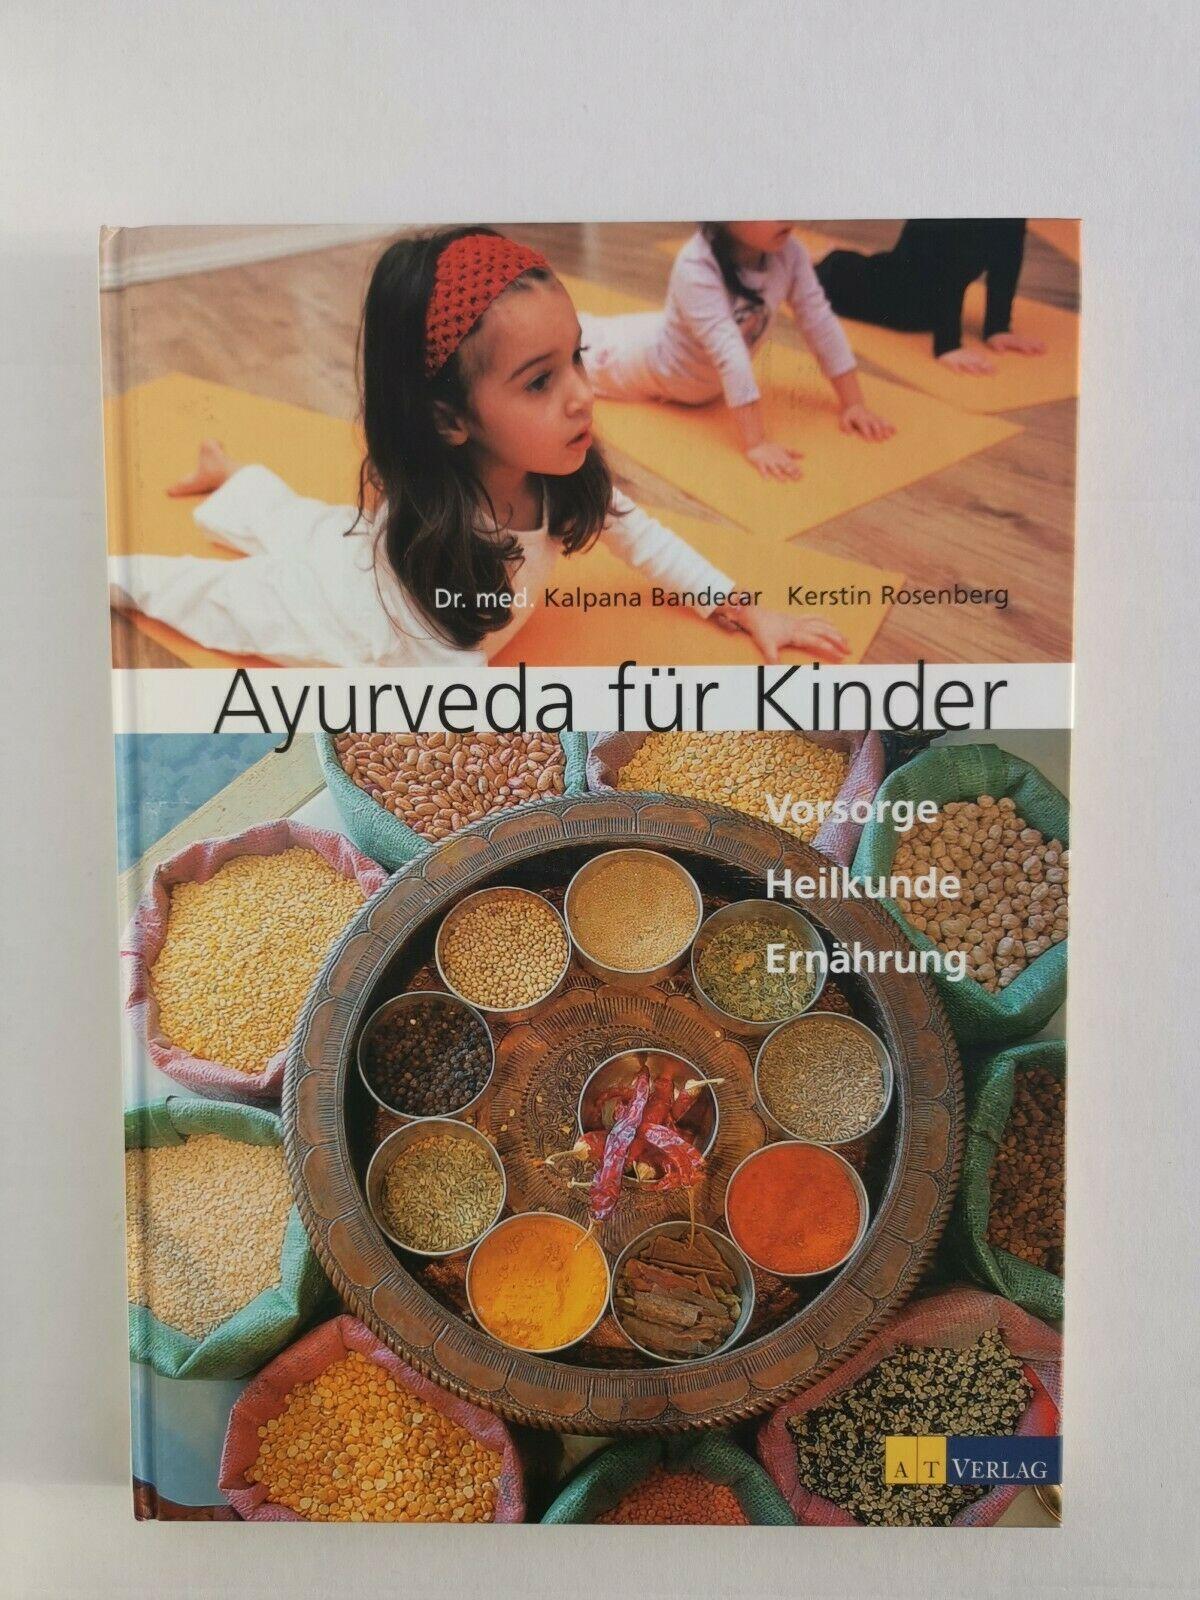 Ayurveda fur Kinder: Vorsorge, Heilkunde, Ernahrung (Deutsch) Gebundene Ausgabe